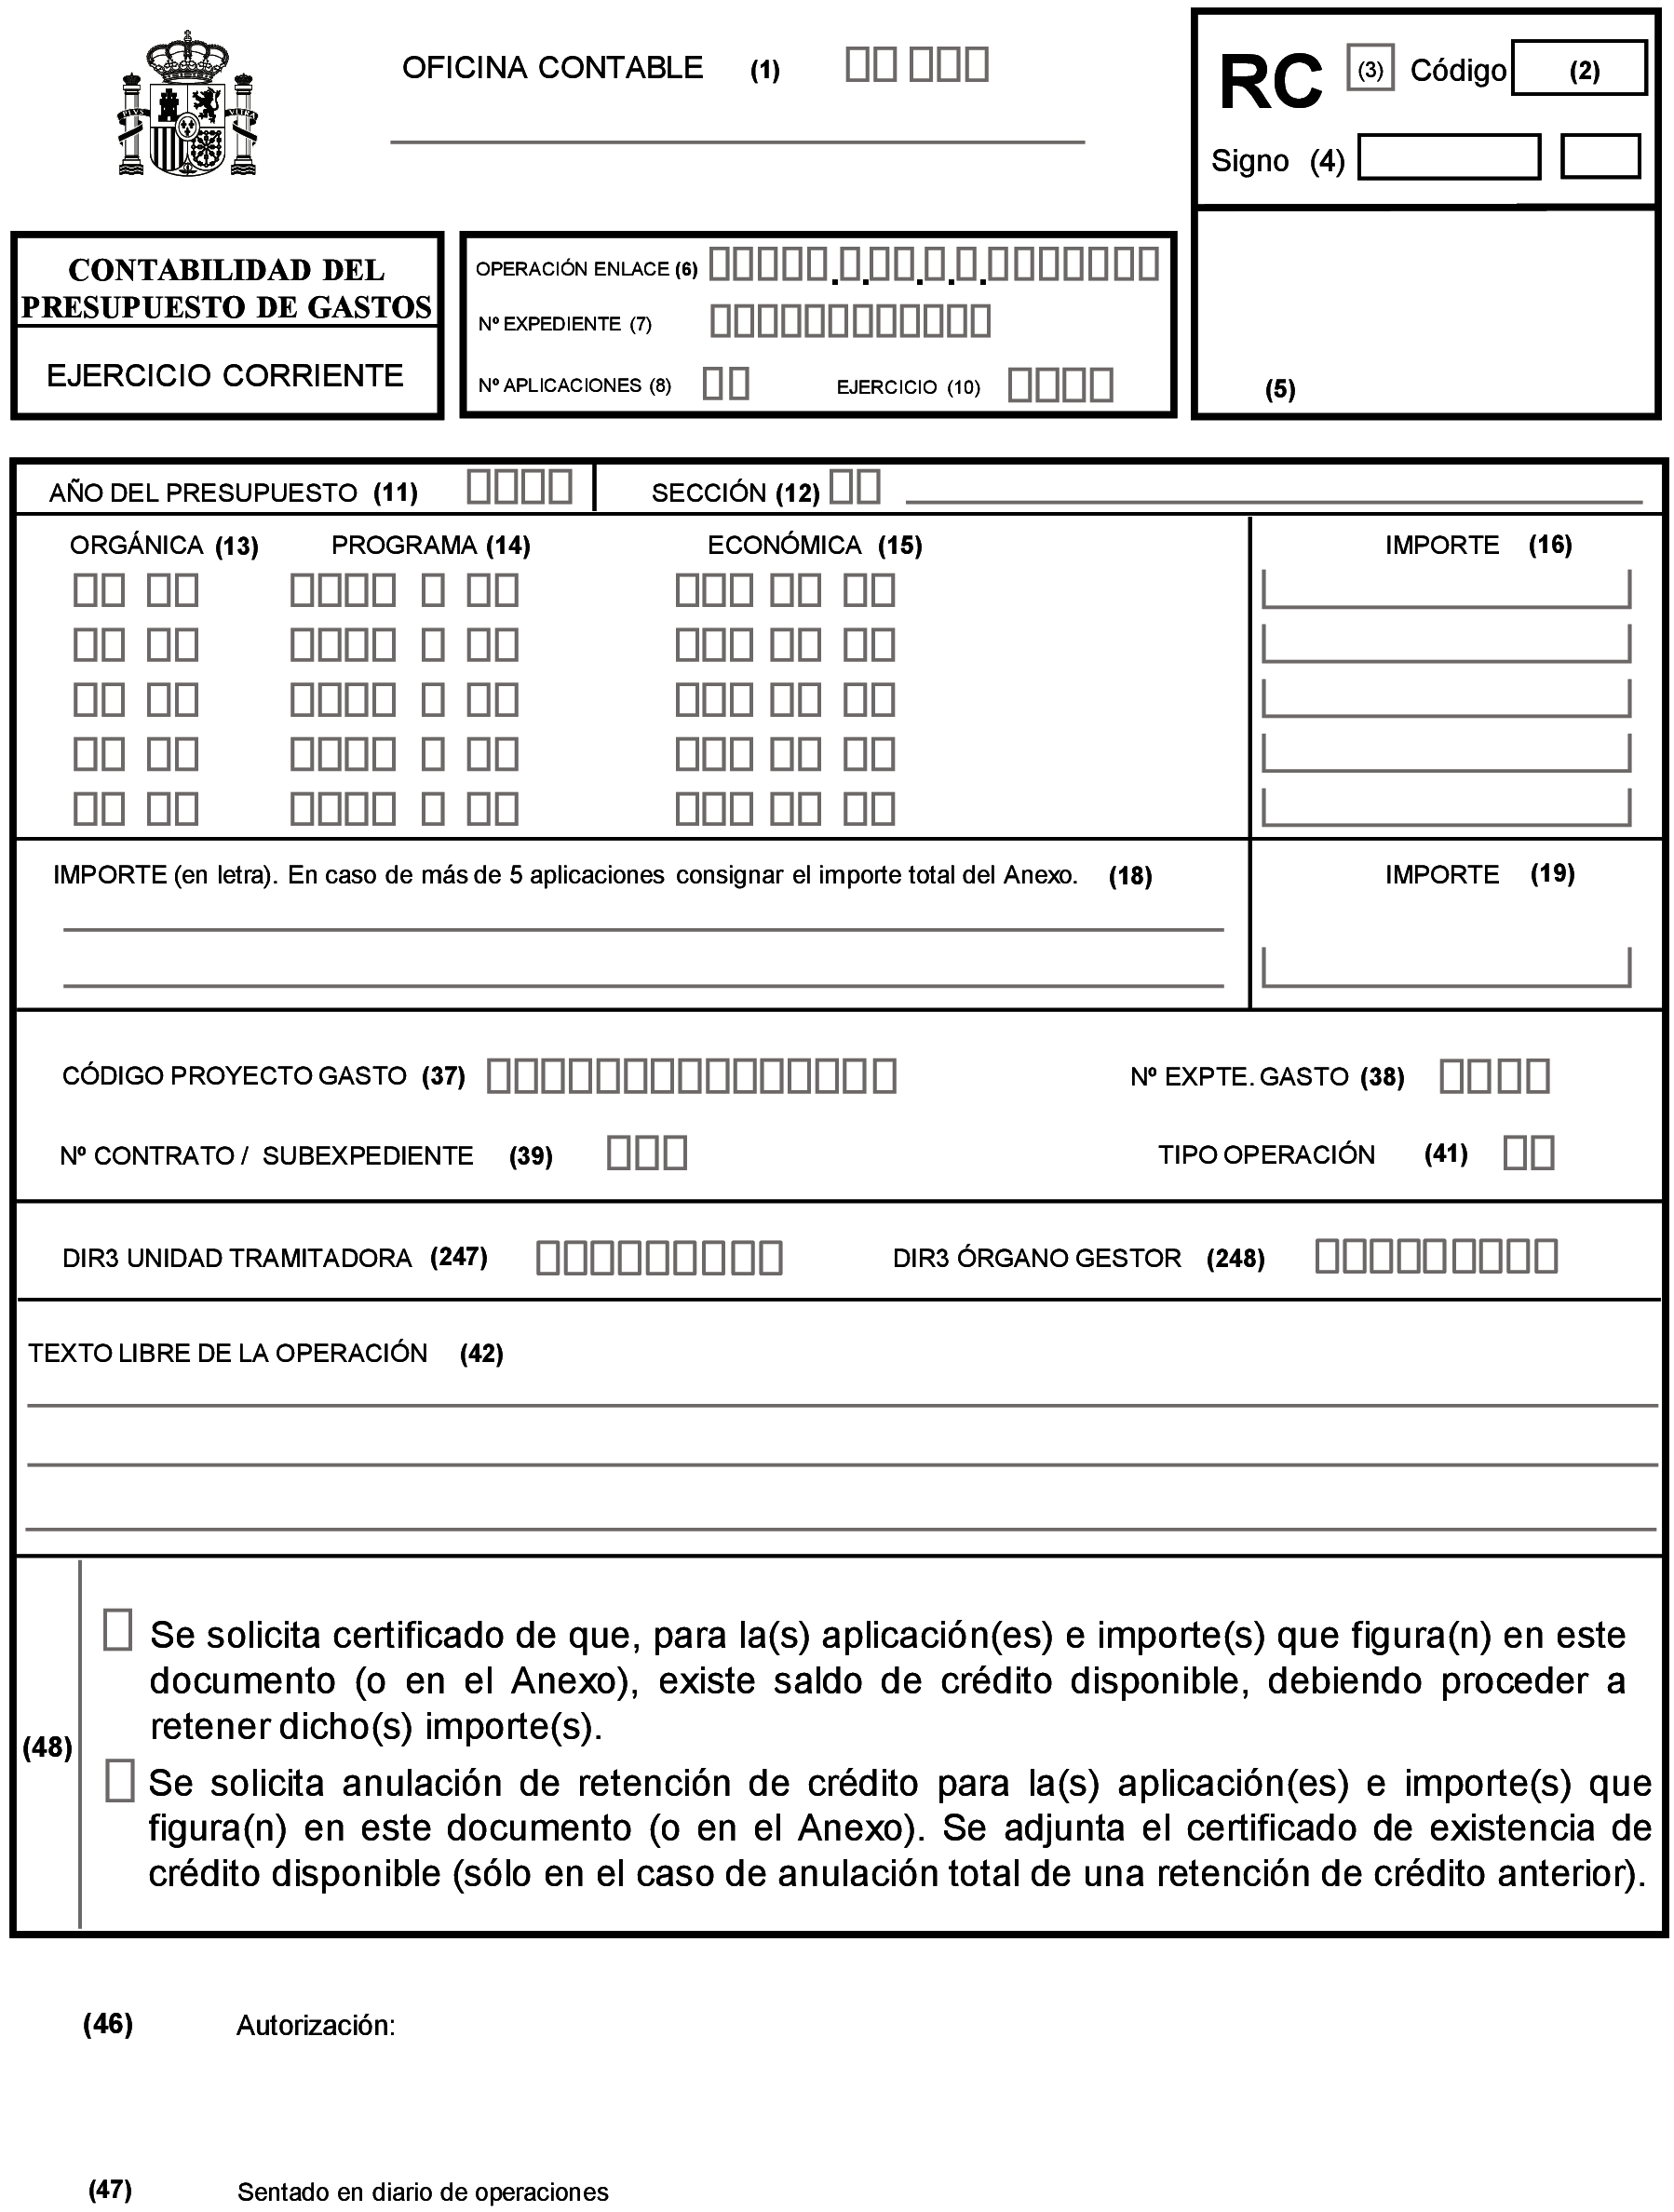 BOE-A-1996-2749 Orden de 1 de febrero de 1996 por la que se aprueban los  documentos contables a utilizar por la Administración General del Estado.